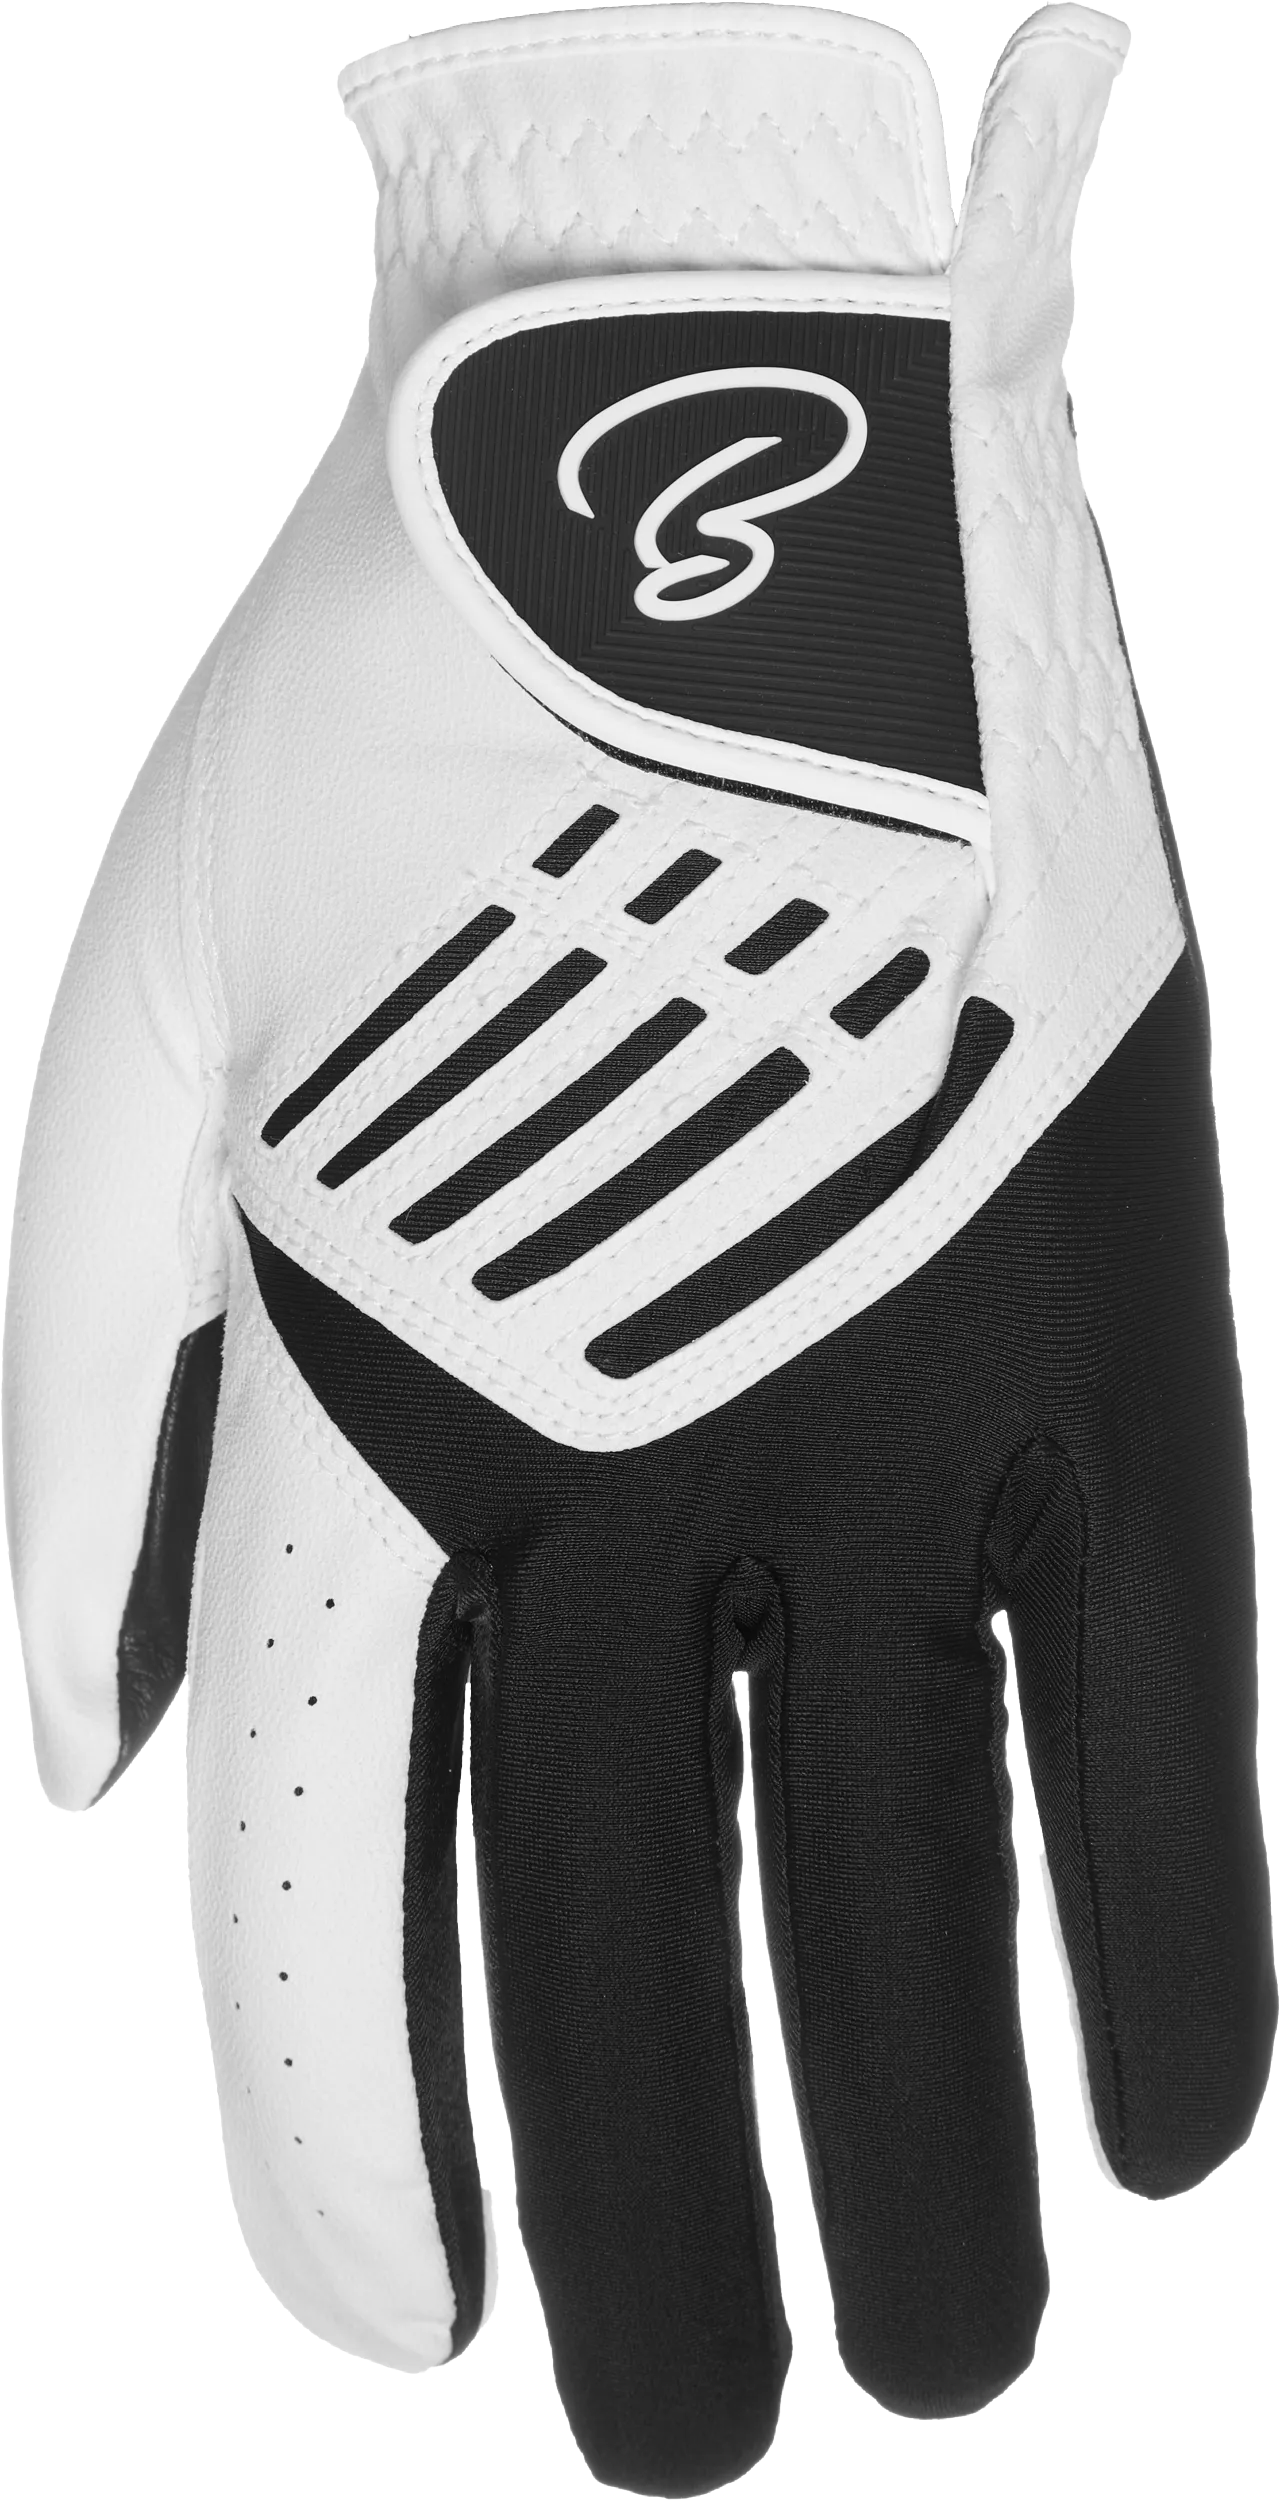 Baller V-Stretch Handschuh, weiß/schwarz